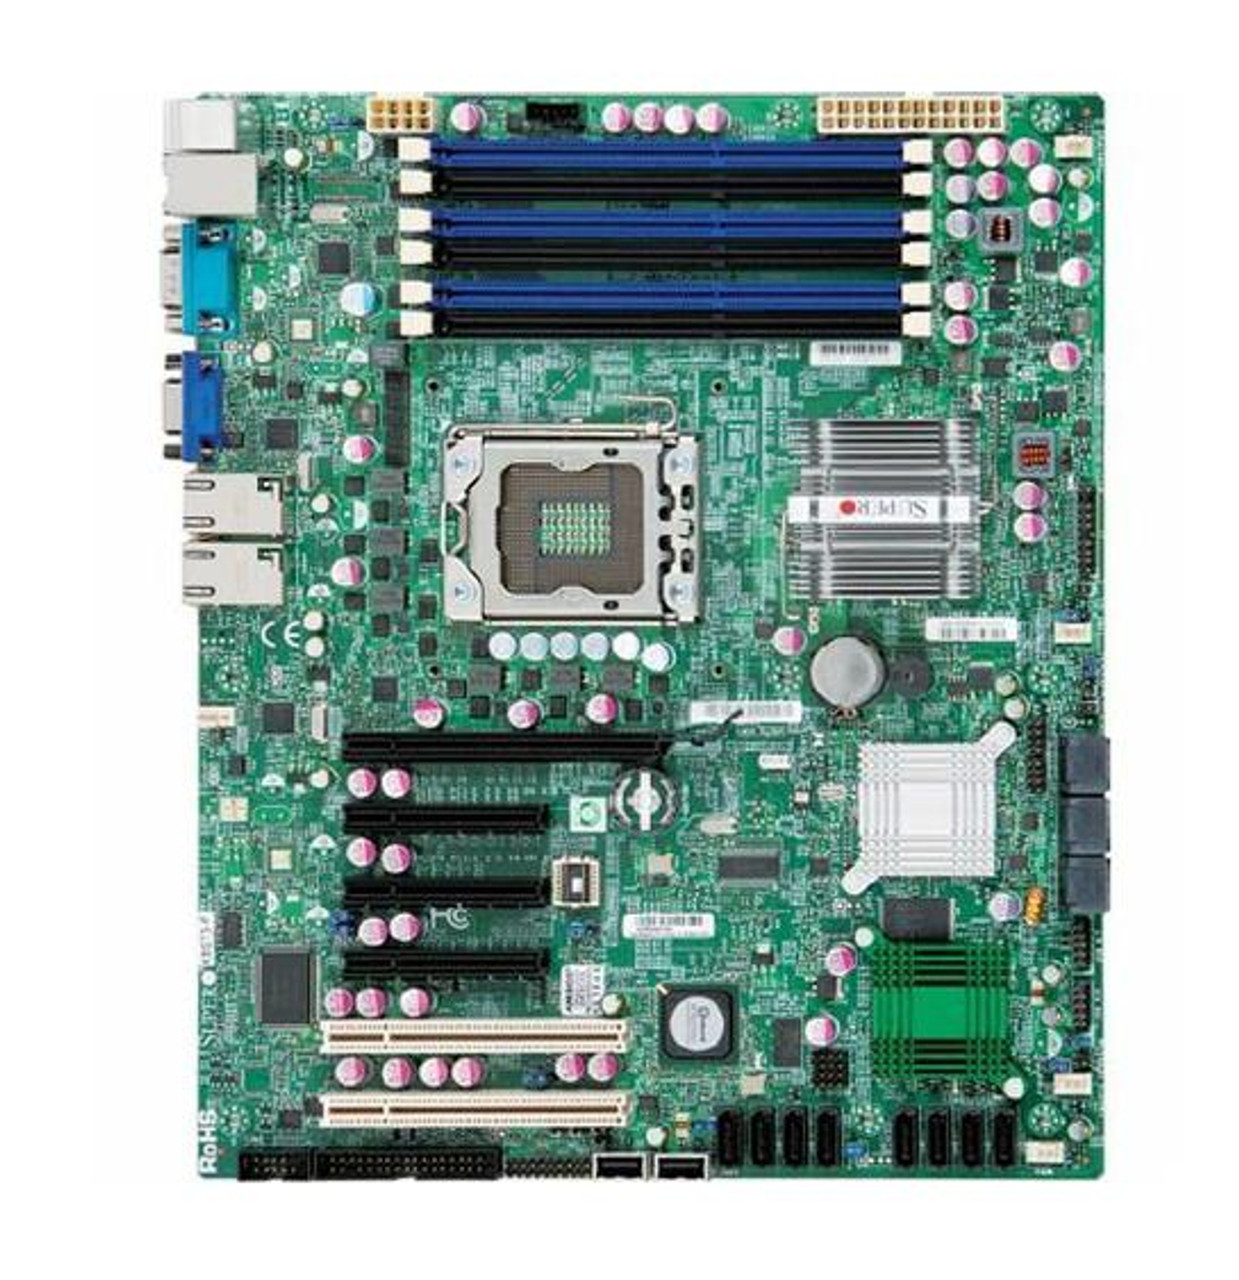 MBD-X8ST3-F-O SuperMicro X8ST3-F Socket LGA1366 Intel X58 Express Chipset ATX Server Motherboard (Refurbished)